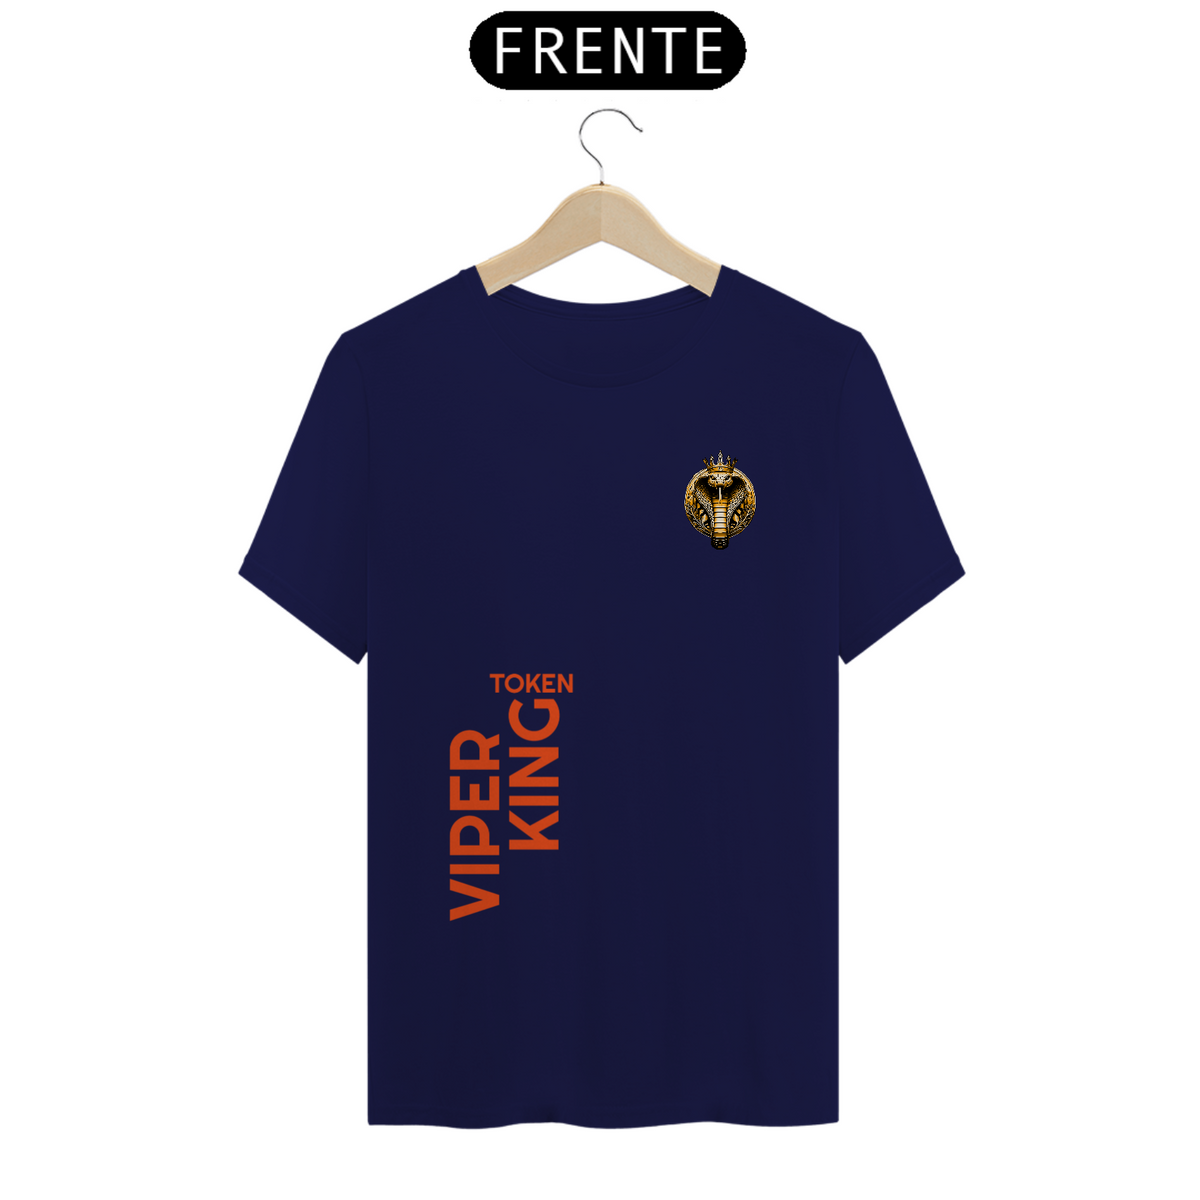 Nome do produto: T-shirt Viper King One